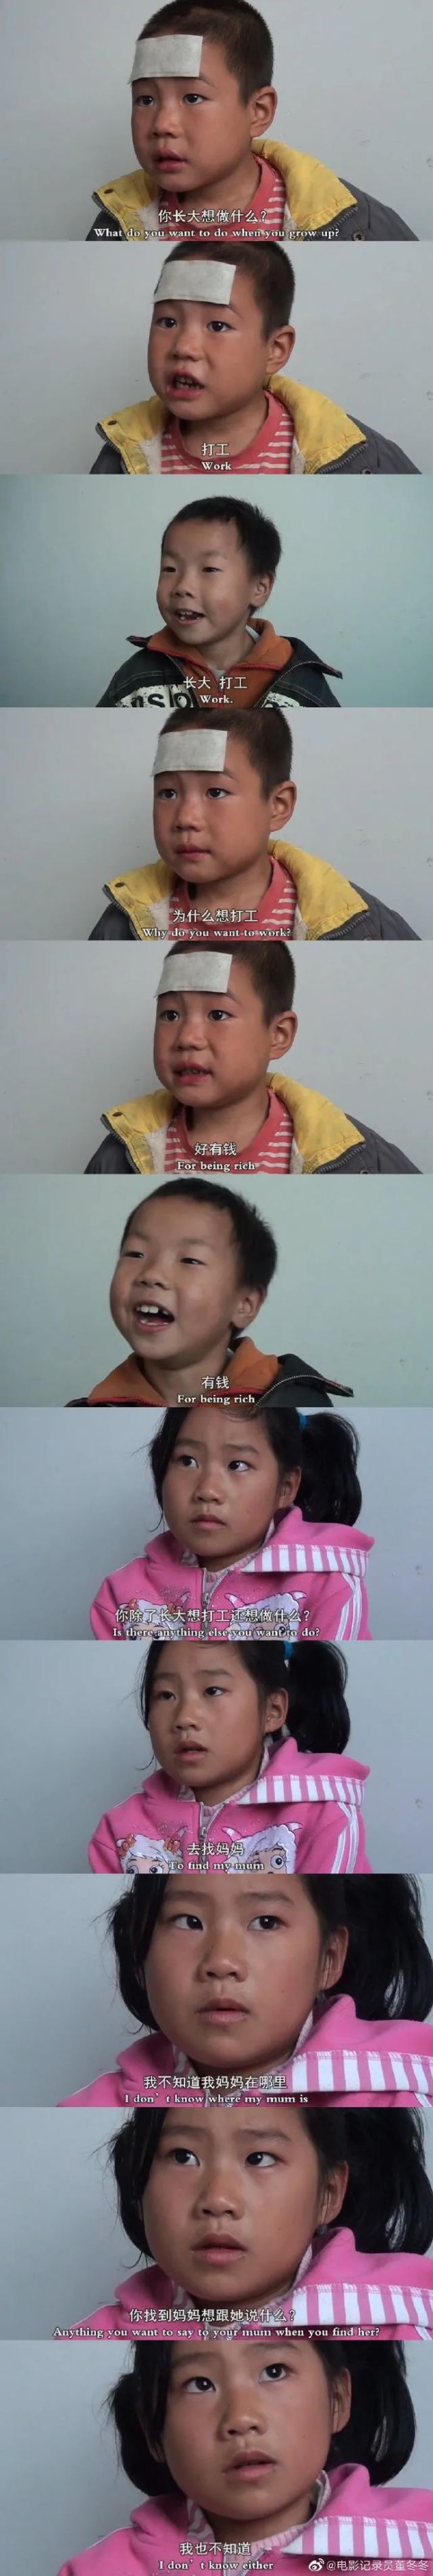 贫困儿童纪录片图片